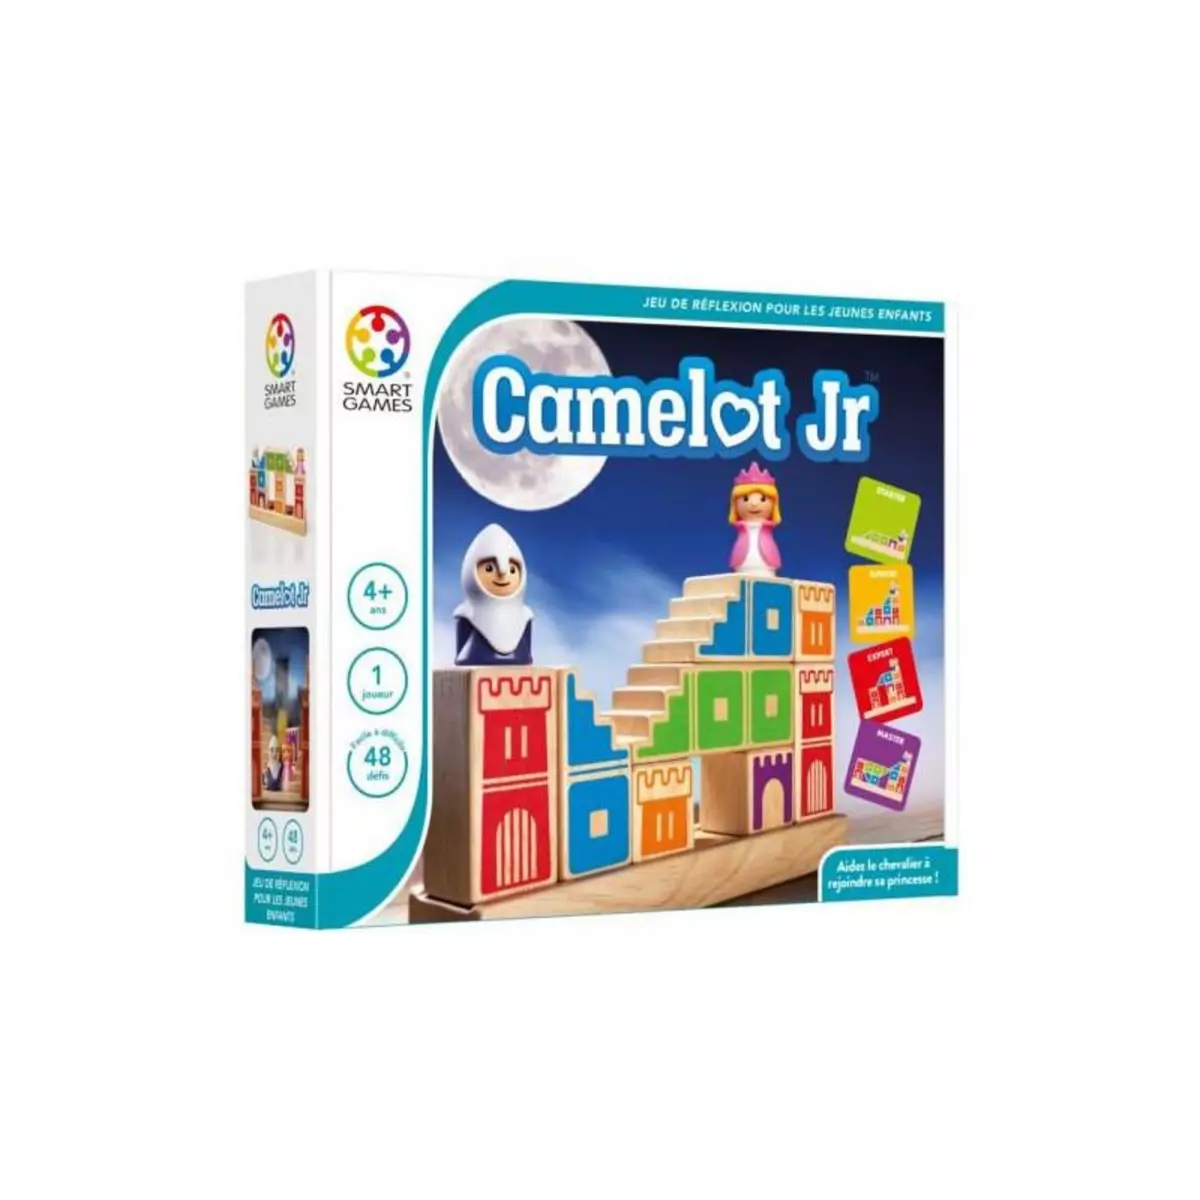 Smart Games Camelot Jr SmartGames